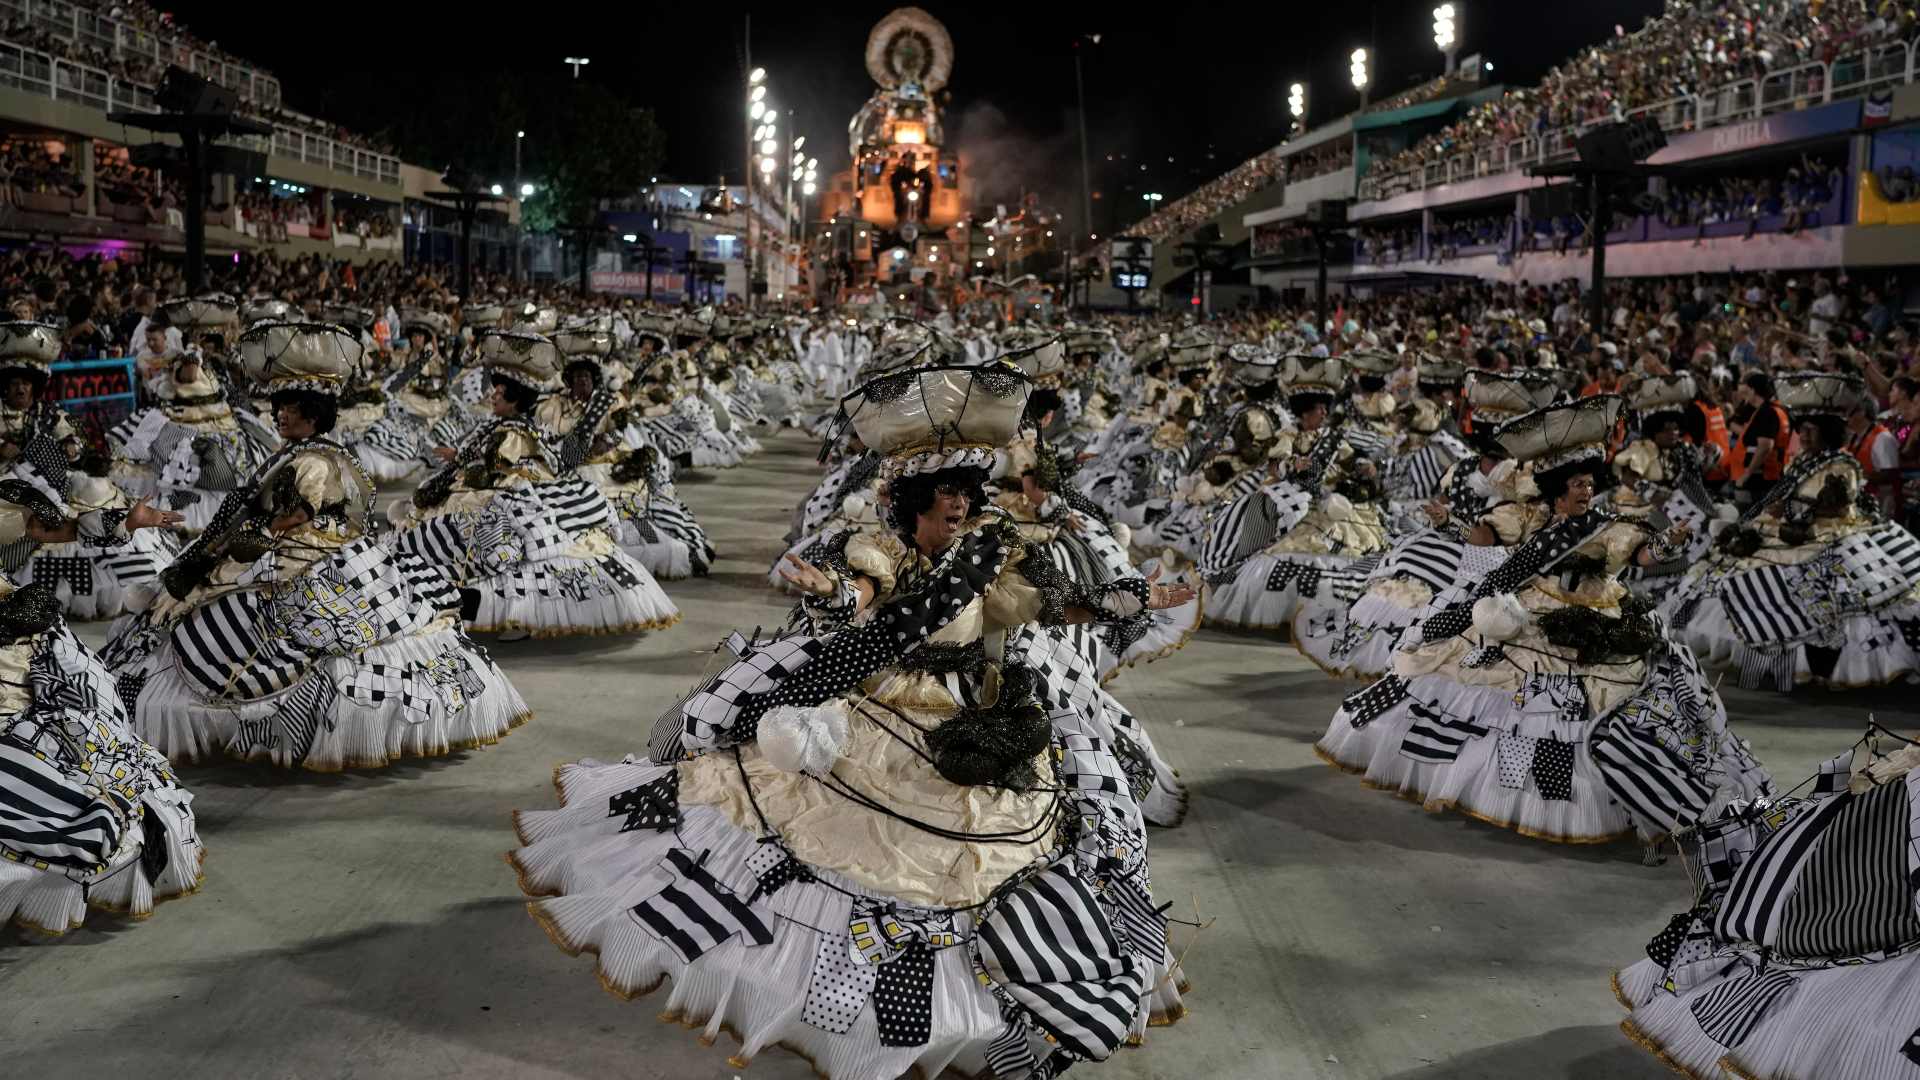 El carnaval de Río arranca con un fuerte tono de protesta: "Que el mundo vea lo que está sucediendo aquí"